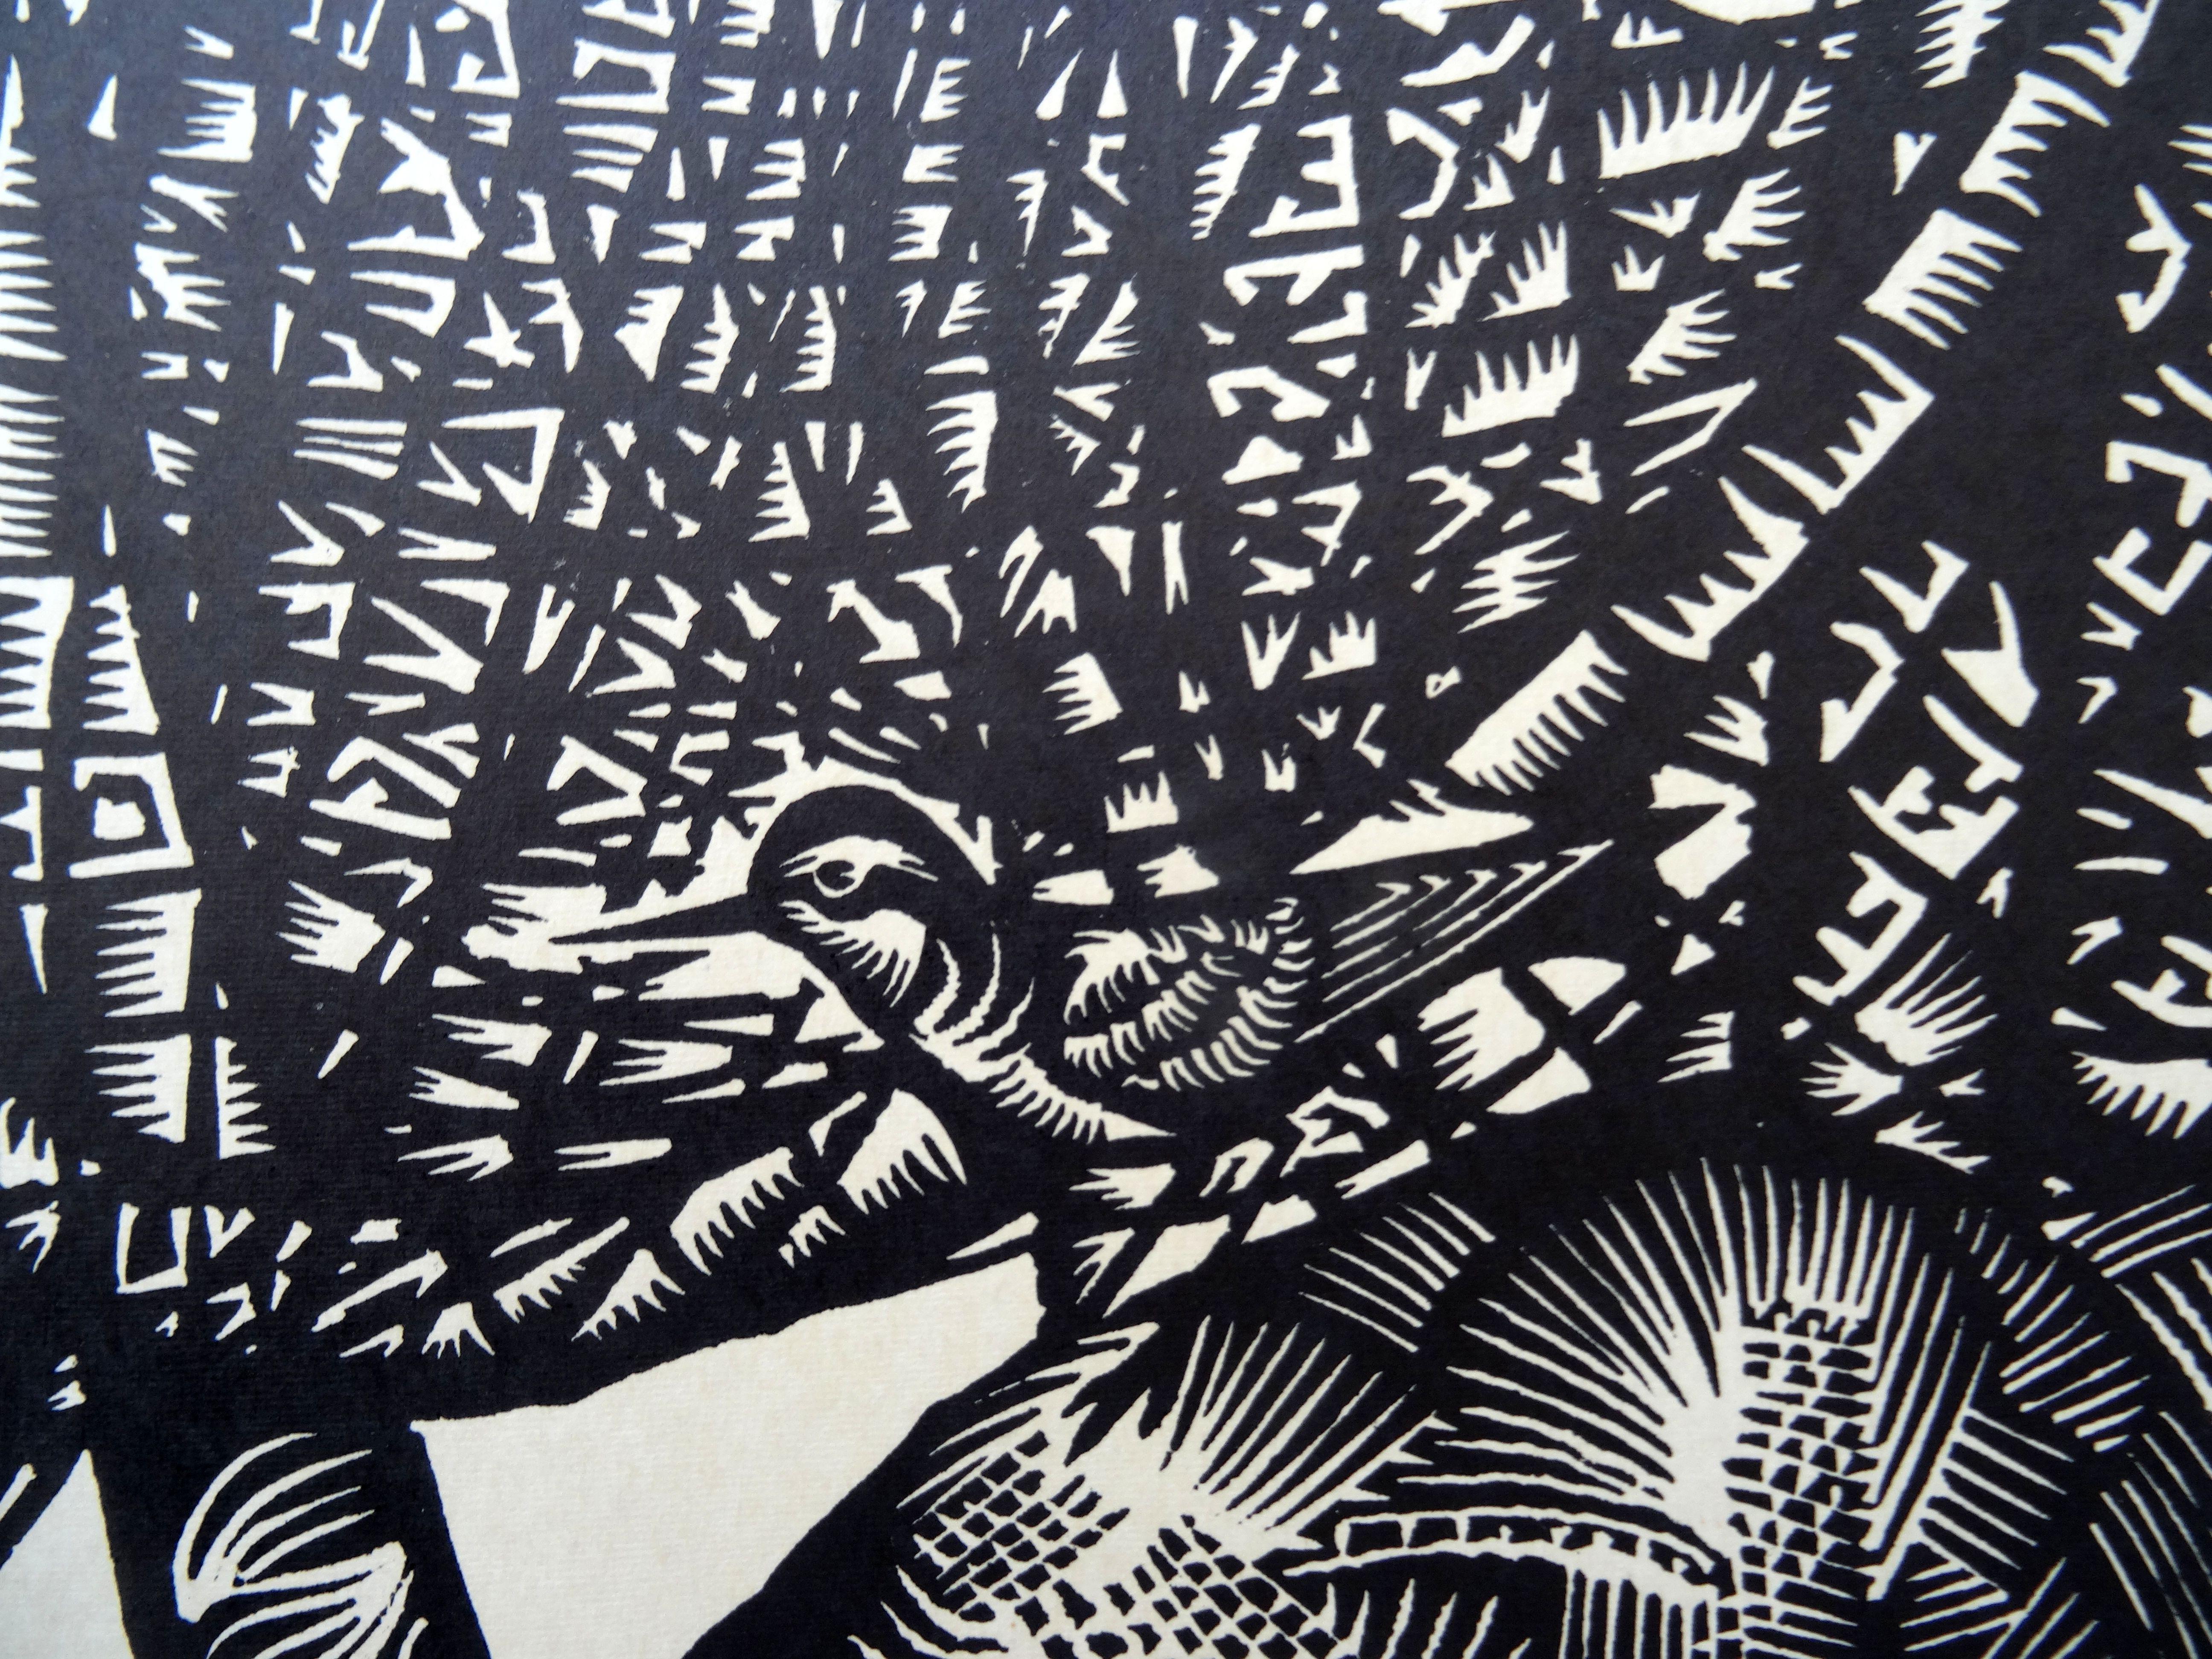 Vogelgrüner Sandpiper. 1976., Papier, Linolschnitt, 80x65 cm (Geometrische Abstraktion), Print, von Dainis Rozkalns